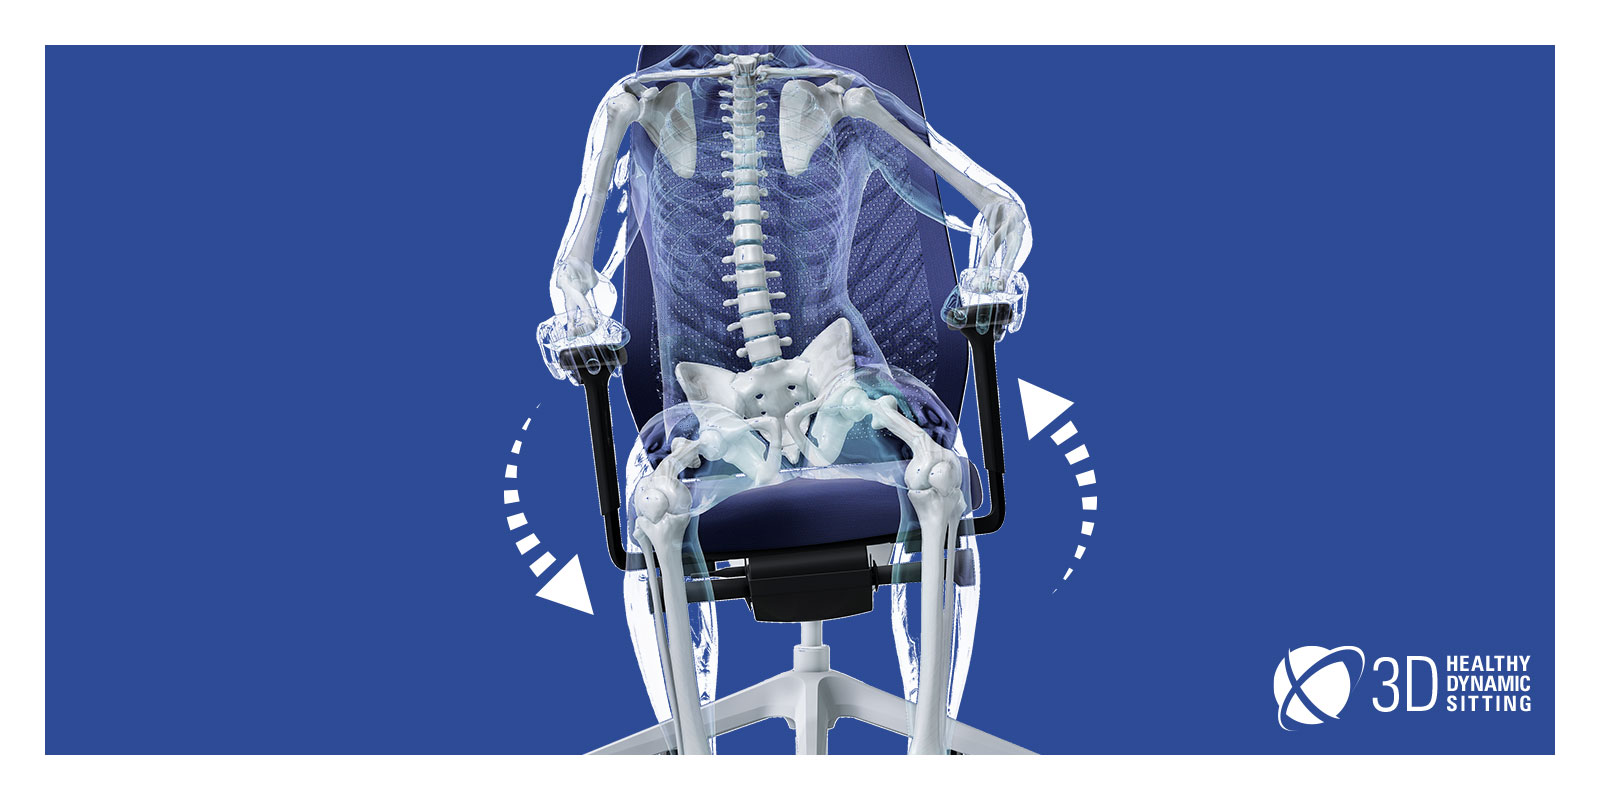 Figura humana transparente con esqueleto visible que está sentada en una silla giratoria JOYCE con respaldo en malla negro, tapizado del asiento azul, brazos en T negros y piezas de polipropileno (p. ej., base, función de columna), con FlexTech en blanco. La figura humana transparente desplaza su peso sobre el lado derecho, por lo que la silla se adapta a sus movimientos. Alrededor de la silla dos flechas blancas forman un círculo que destaca a la movilidad de la silla. La función FlexTech favorece esta forma de sentarse activa.